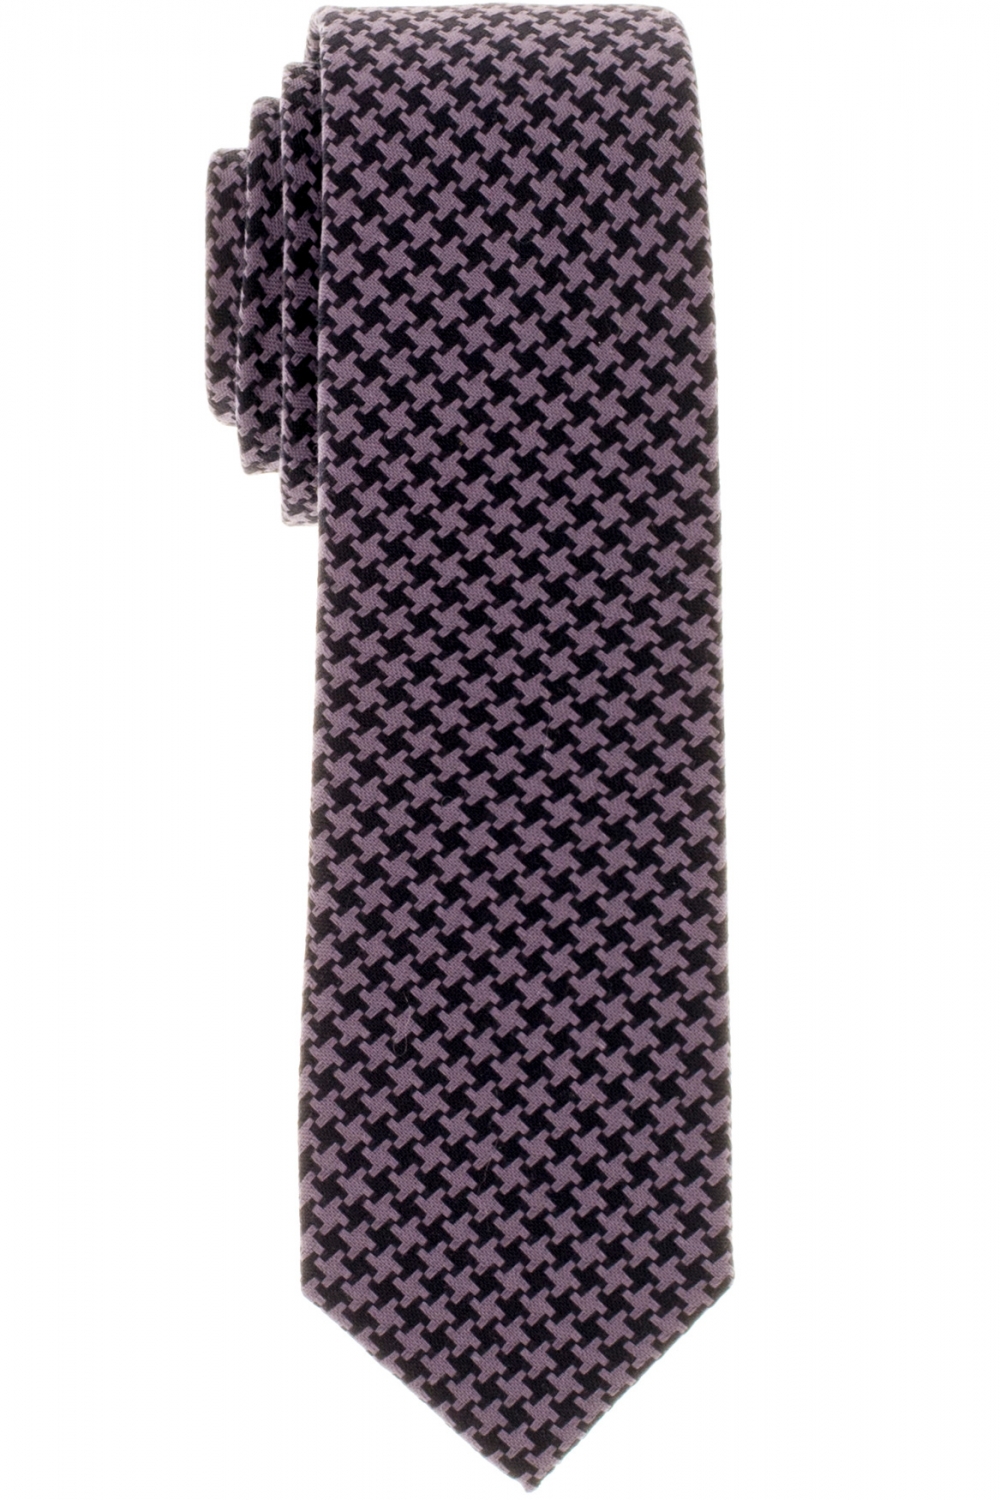 online Eterna kaufen Krawatte 9815